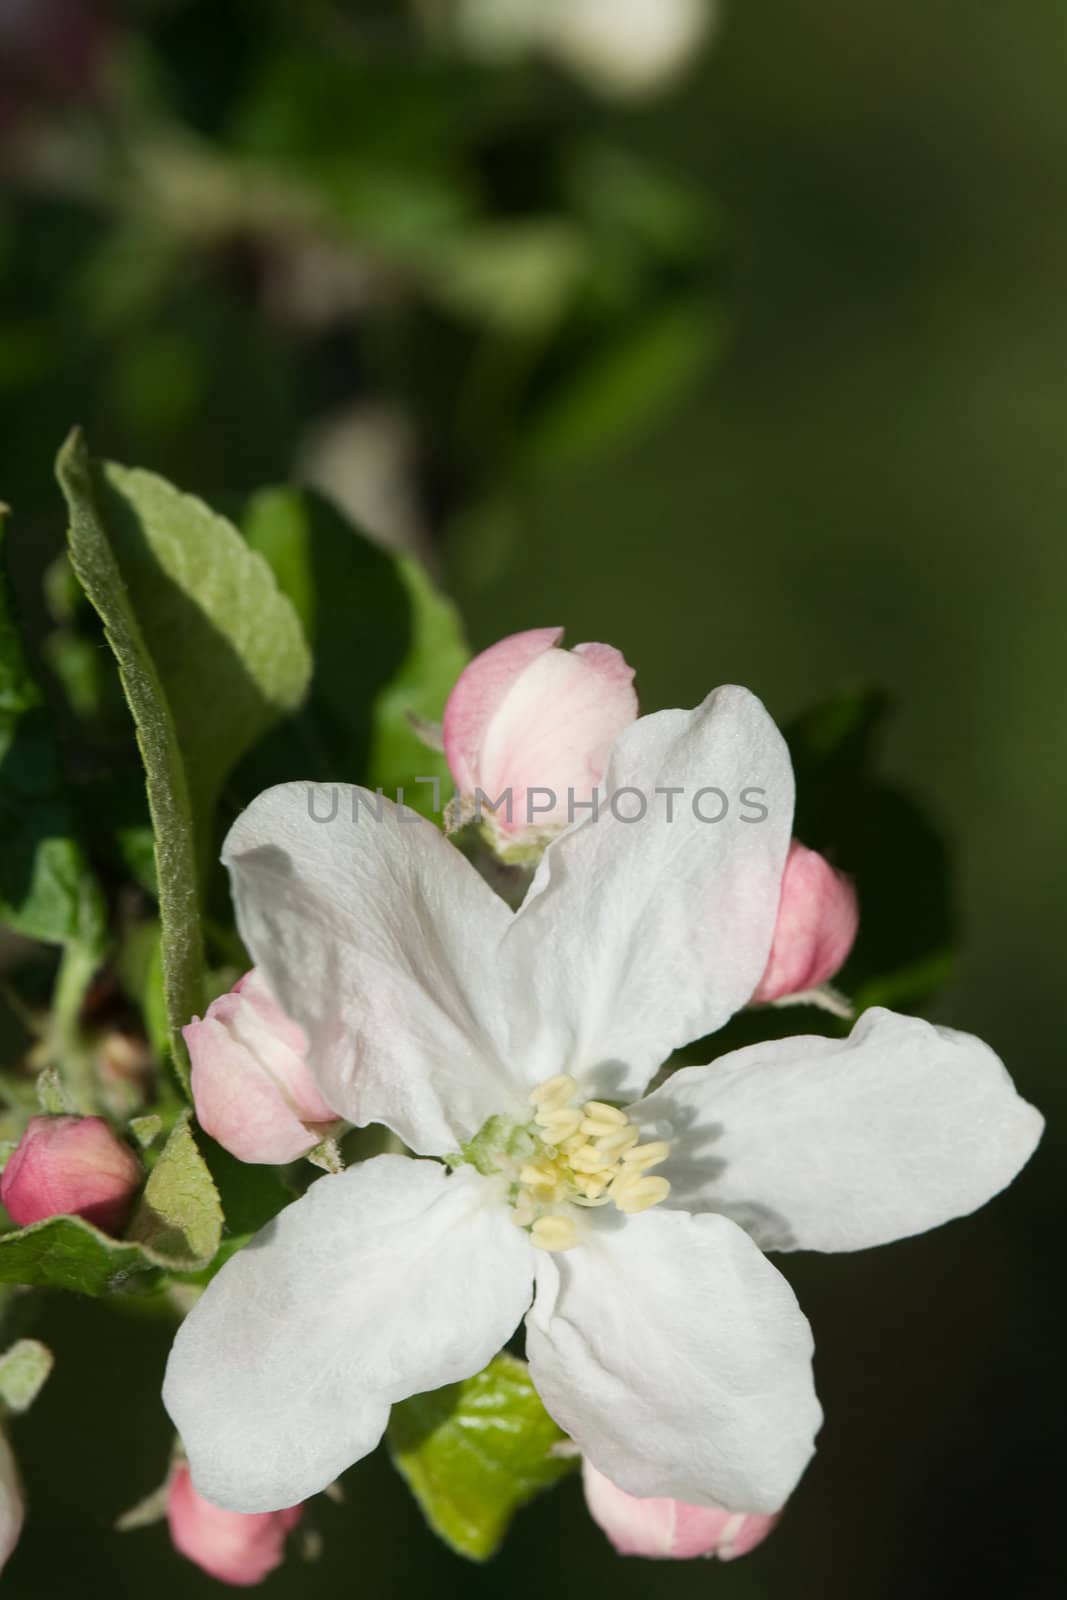 White apple blossoms by velkol